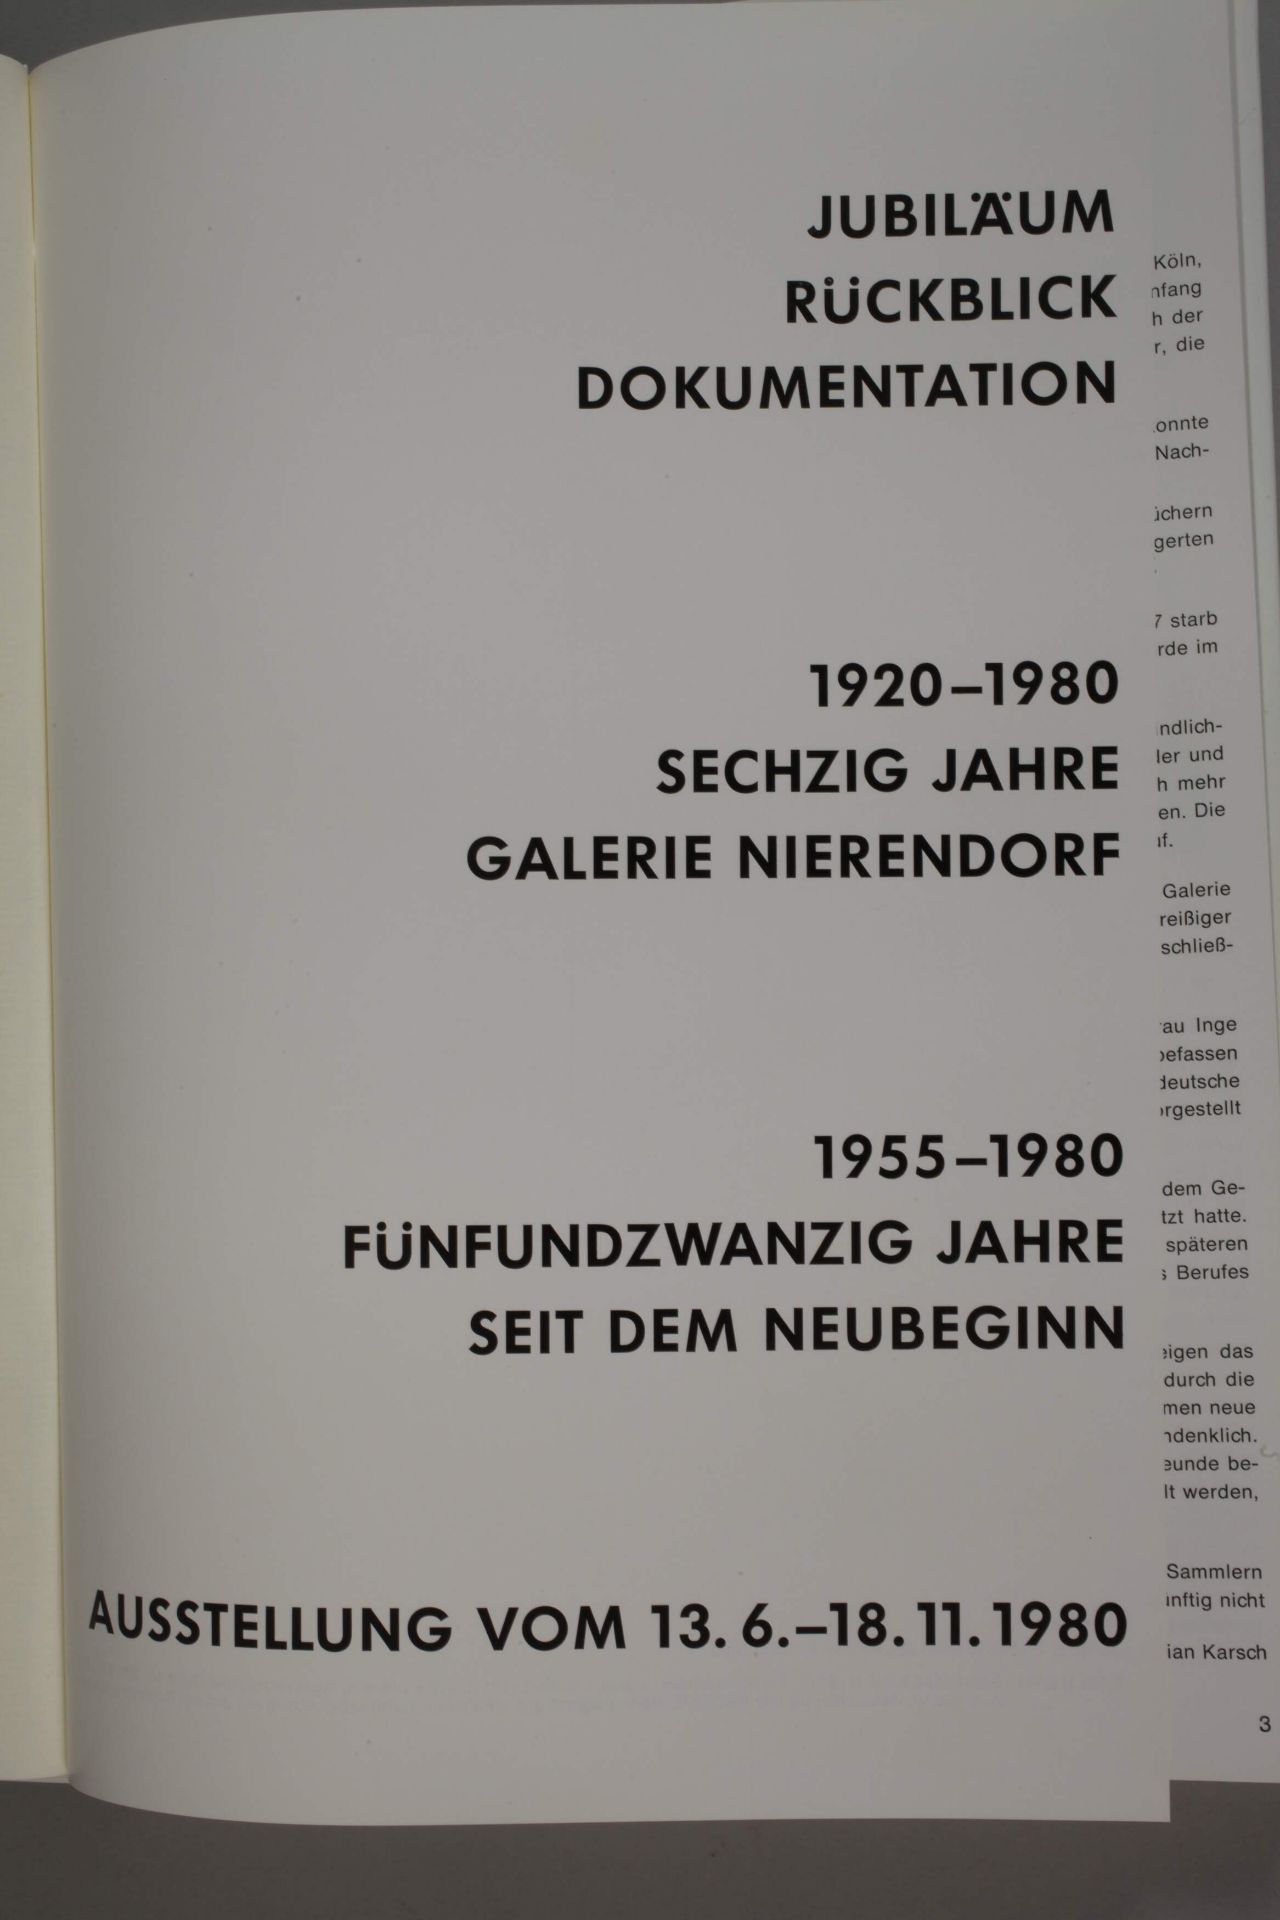 60 years of Galerie Nierendorf - Image 2 of 5